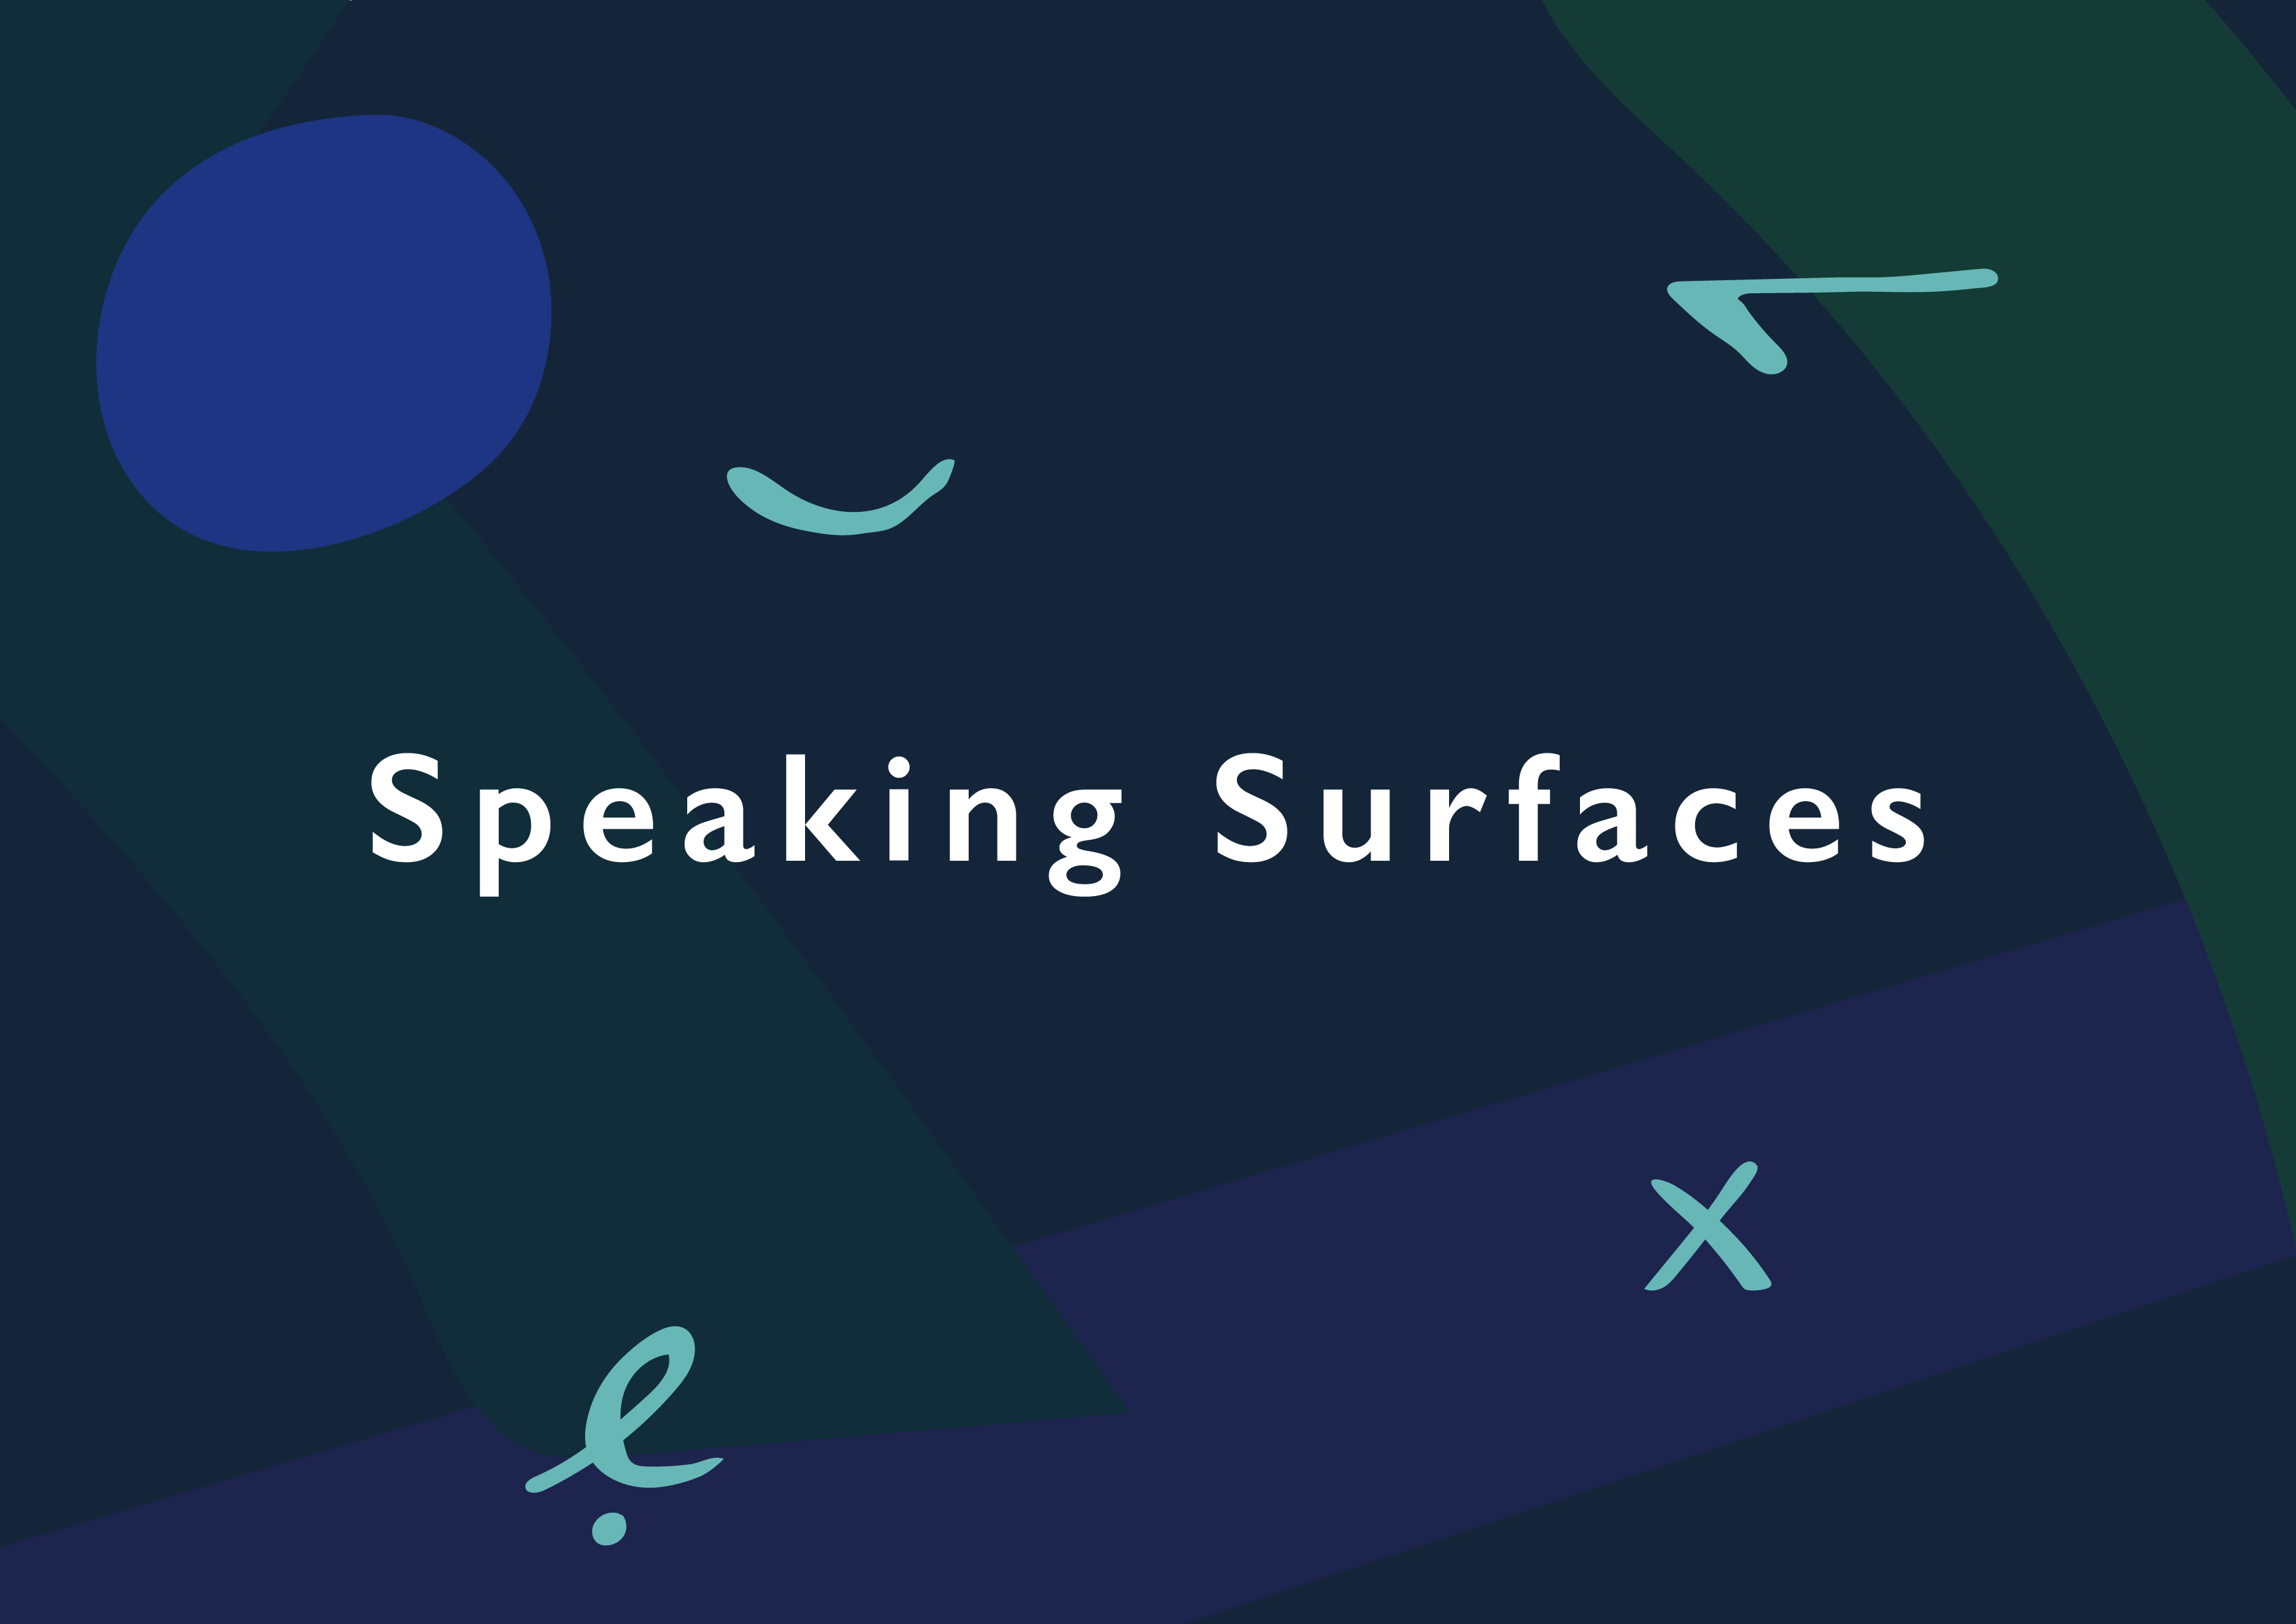 Speaking Surfaces, design